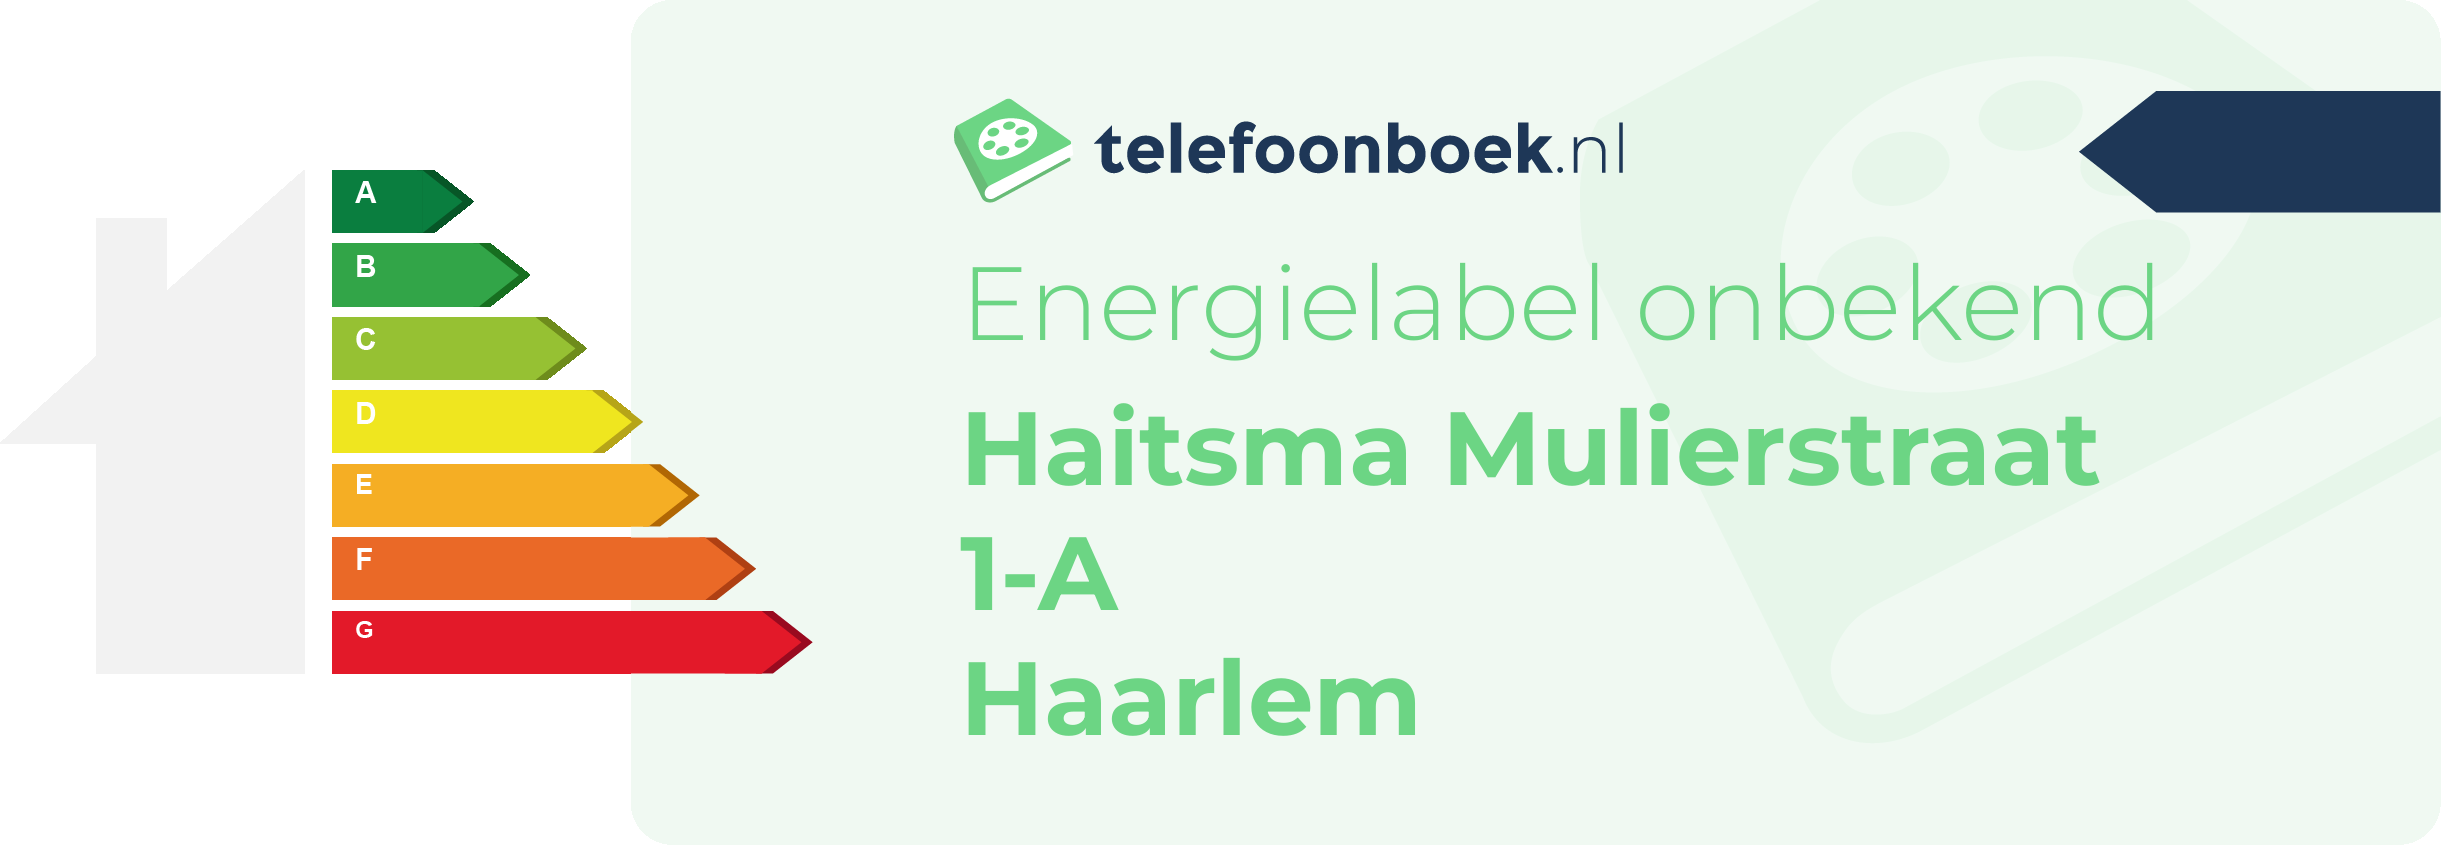 Energielabel Haitsma Mulierstraat 1-A Haarlem